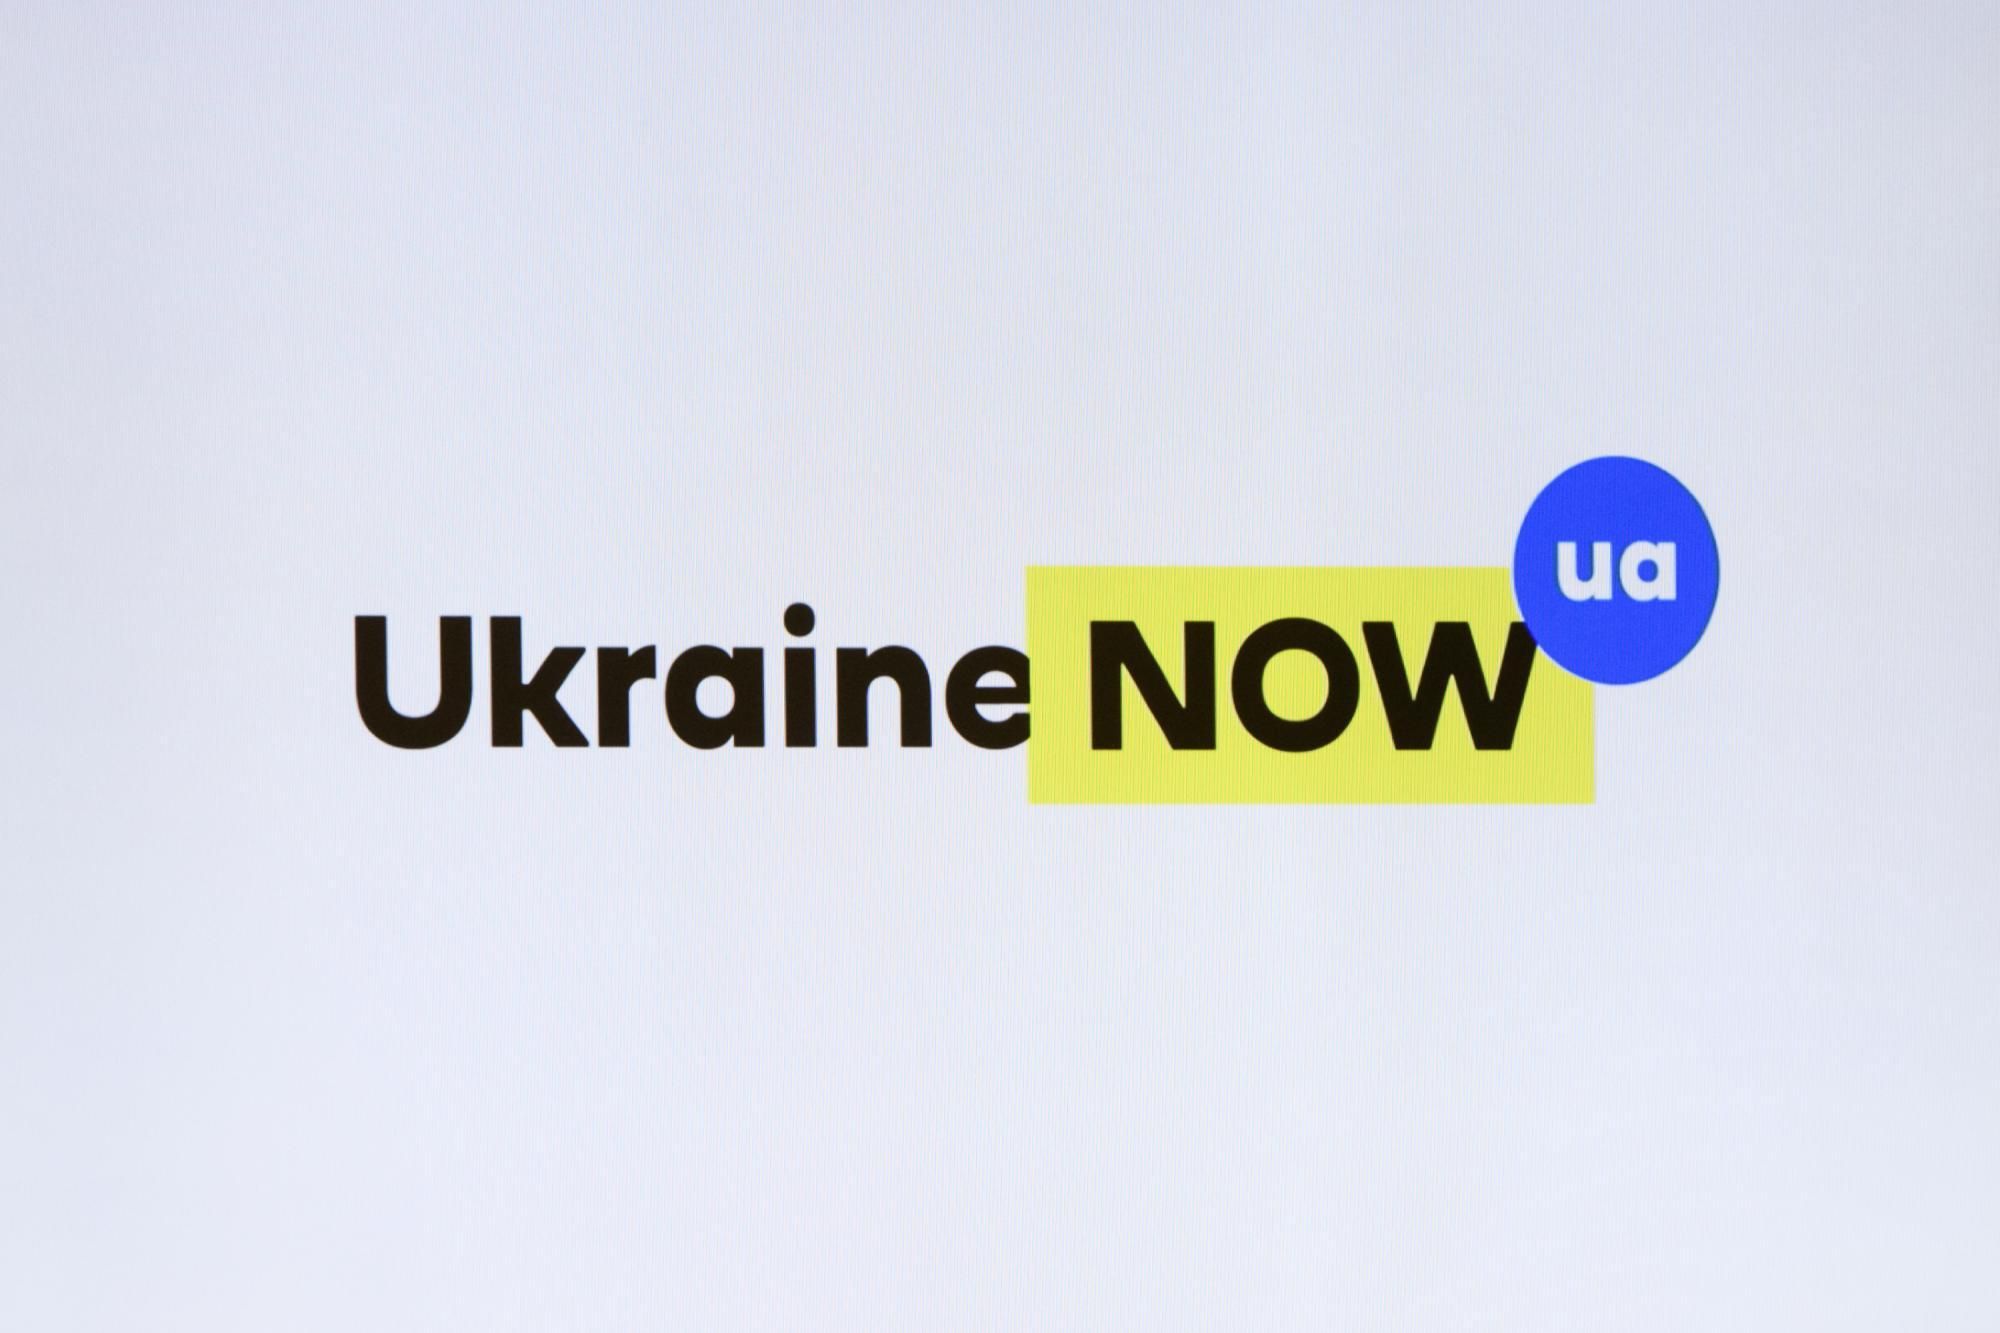 У Украины появился рекламный бренд, который будет представлять ее среди мирового сообщества